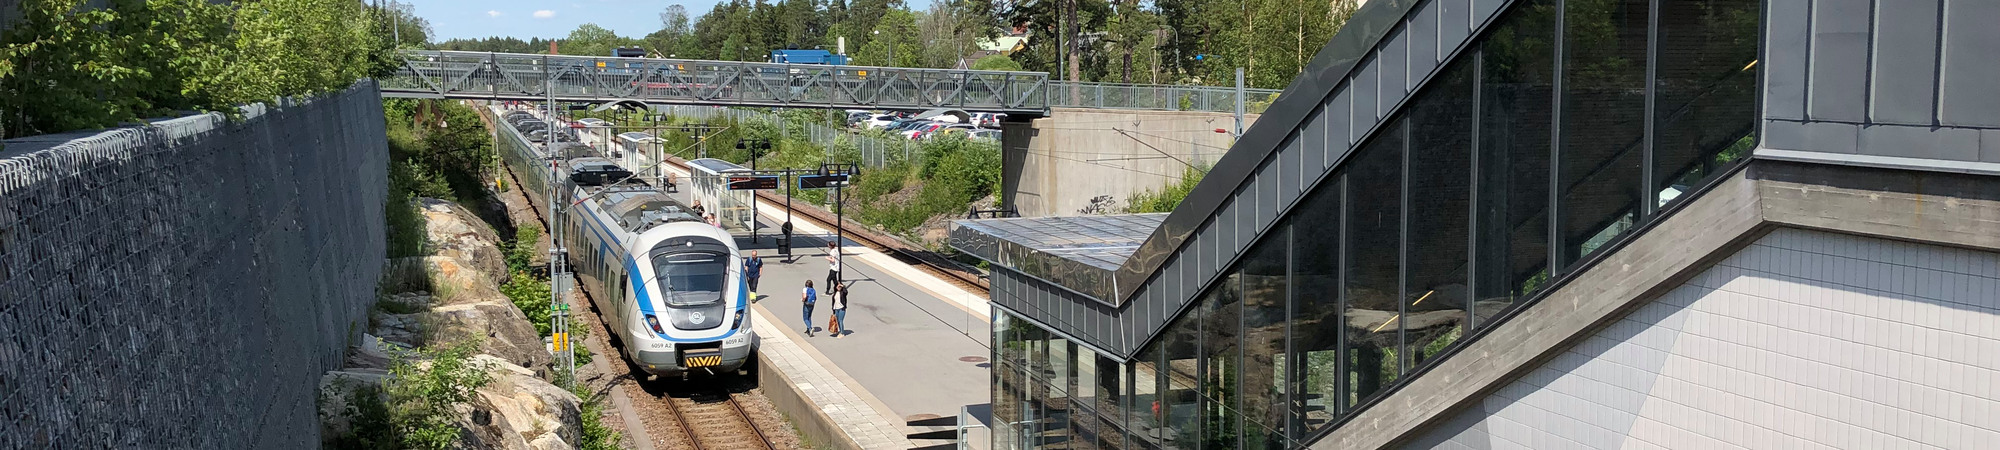 Pendeltåg på Ösmo station